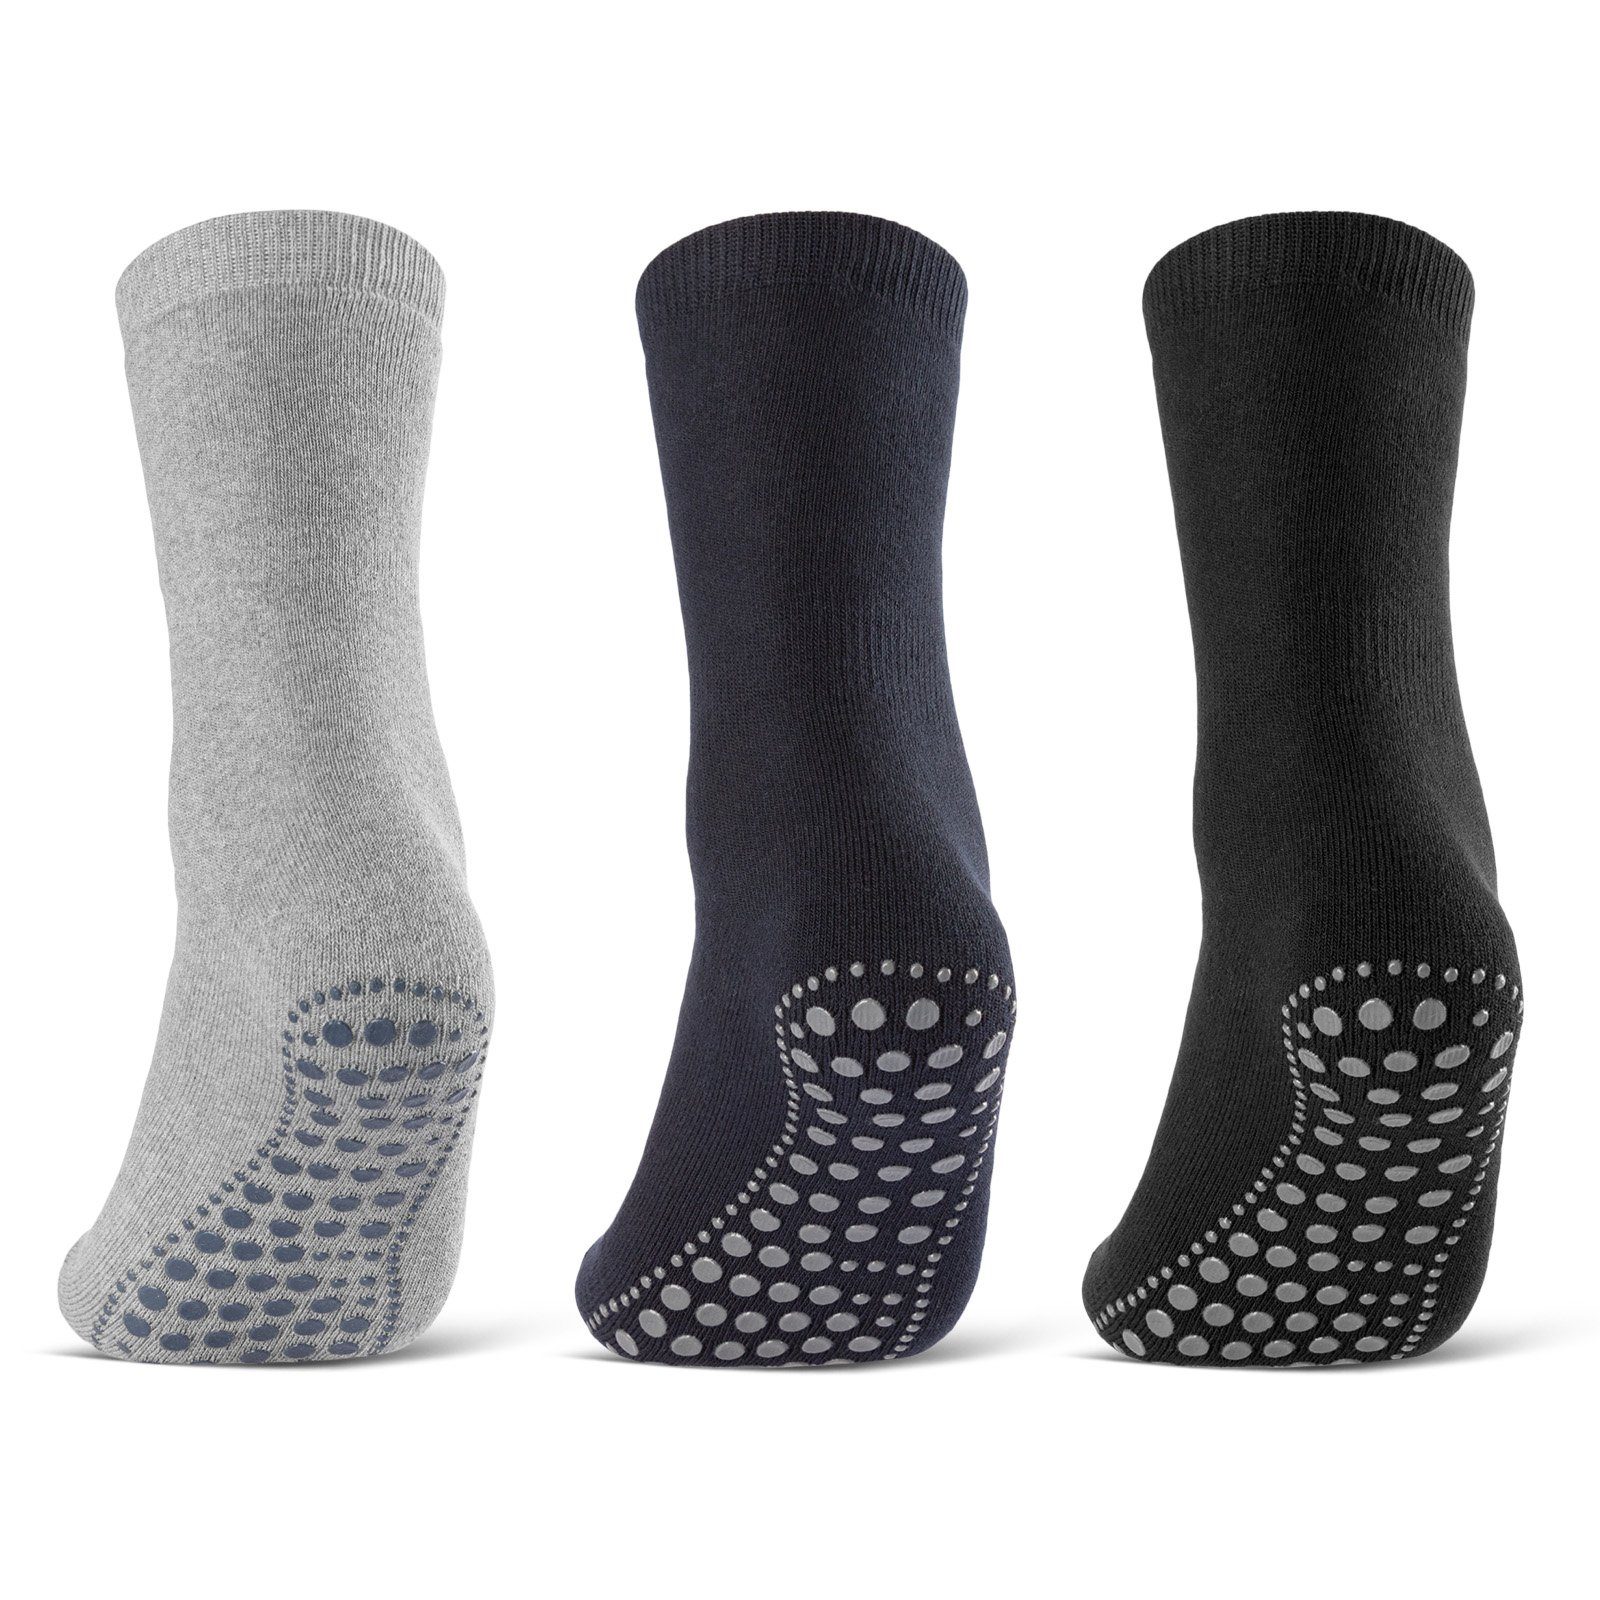 sockenkauf24 ABS-Socken 3 oder 6 Paar "Premium" Anti Rutsch Socken Damen Herren (Schwarz, Blau, Grau, 3-Paar, 43-46) ABS Socken Noppen Stoppersocken - 8600 WP Schwarz-Blau-Grau